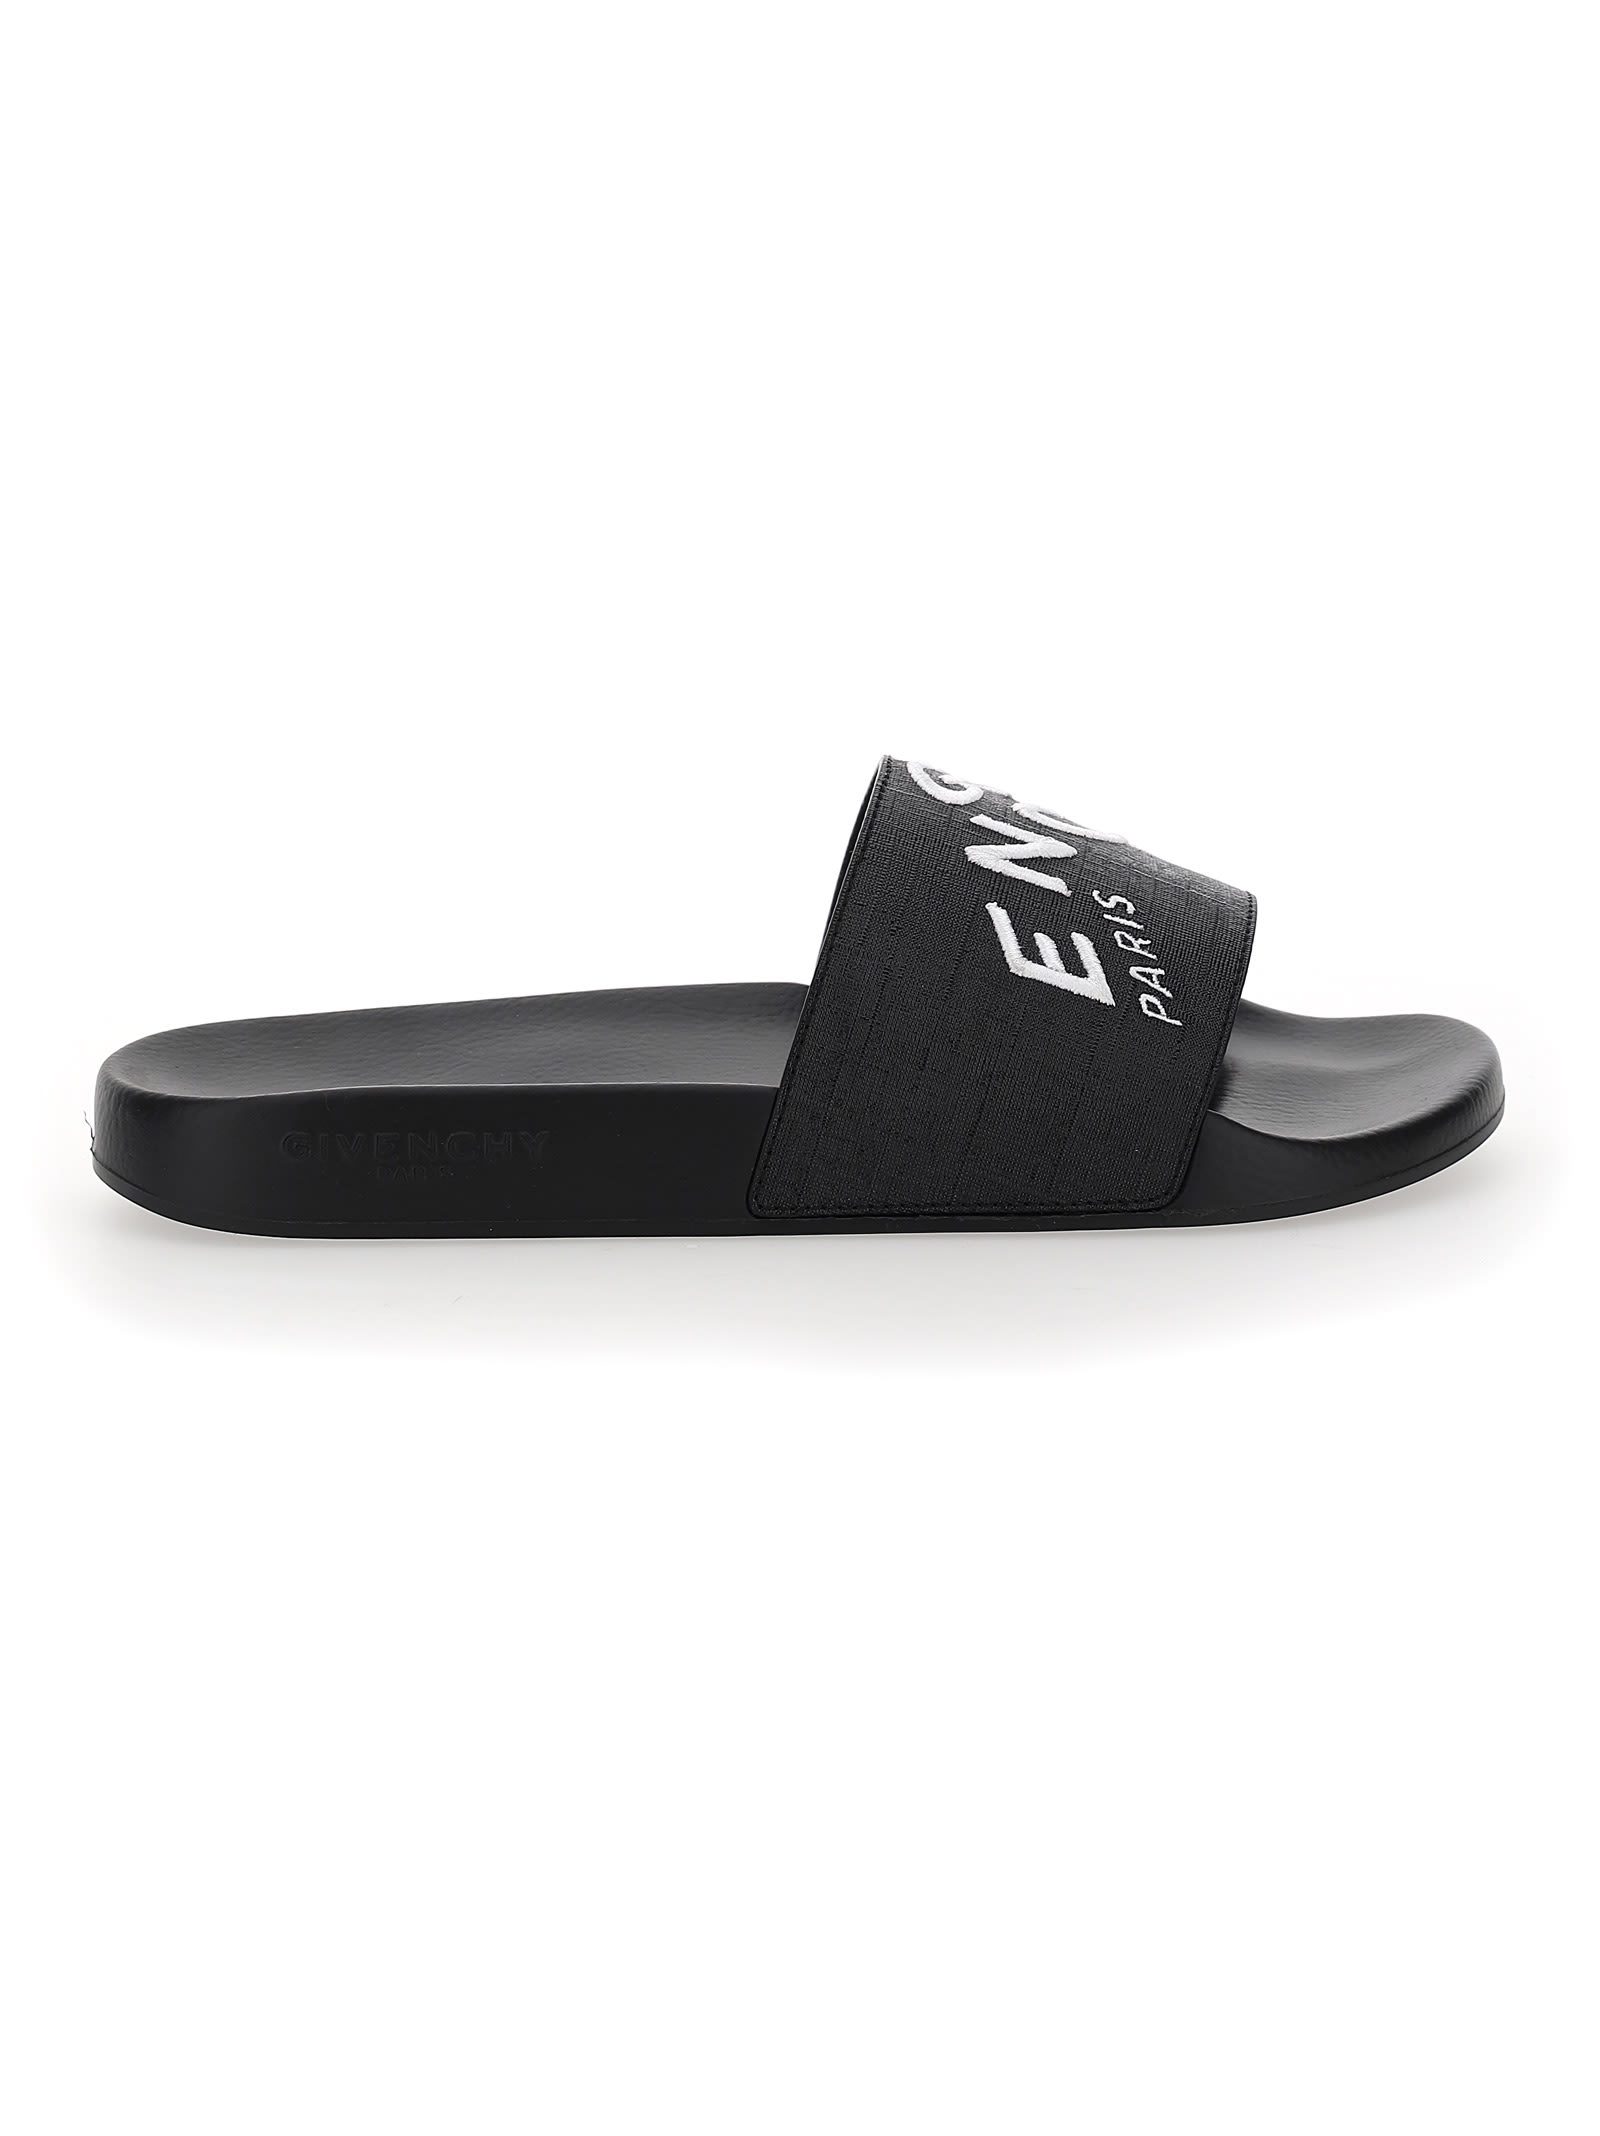 Givenchy Slides Sandals